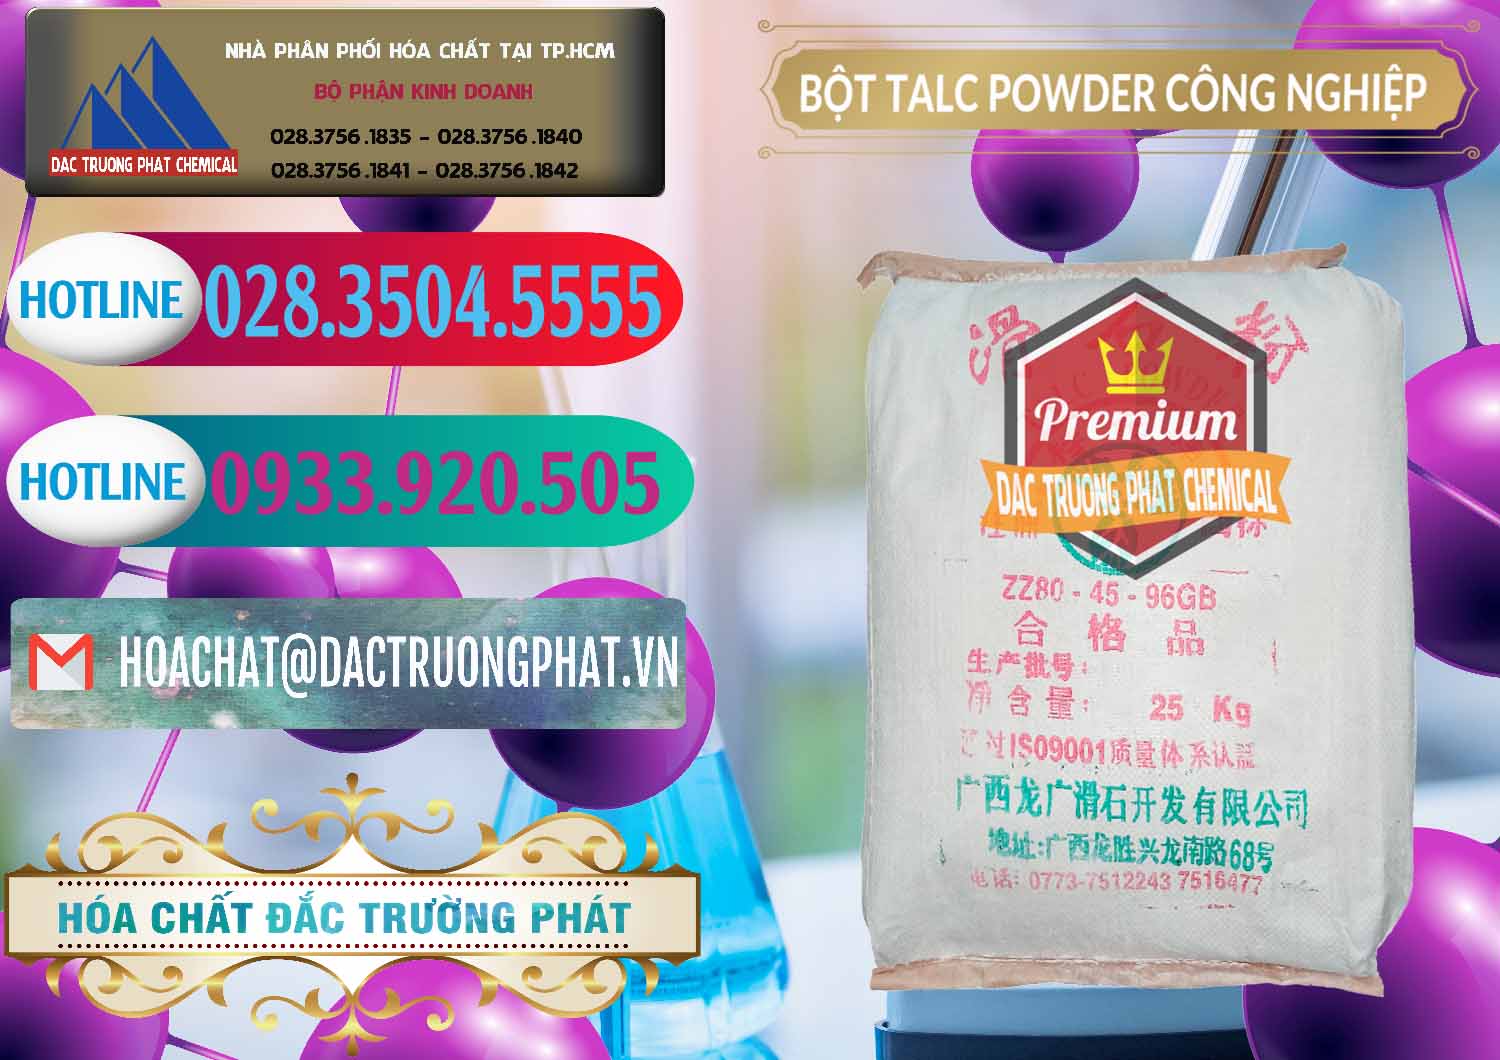 Nơi chuyên bán ( phân phối ) Bột Talc Powder Công Nghiệp Trung Quốc China - 0037 - Đơn vị cung ứng _ phân phối hóa chất tại TP.HCM - truongphat.vn